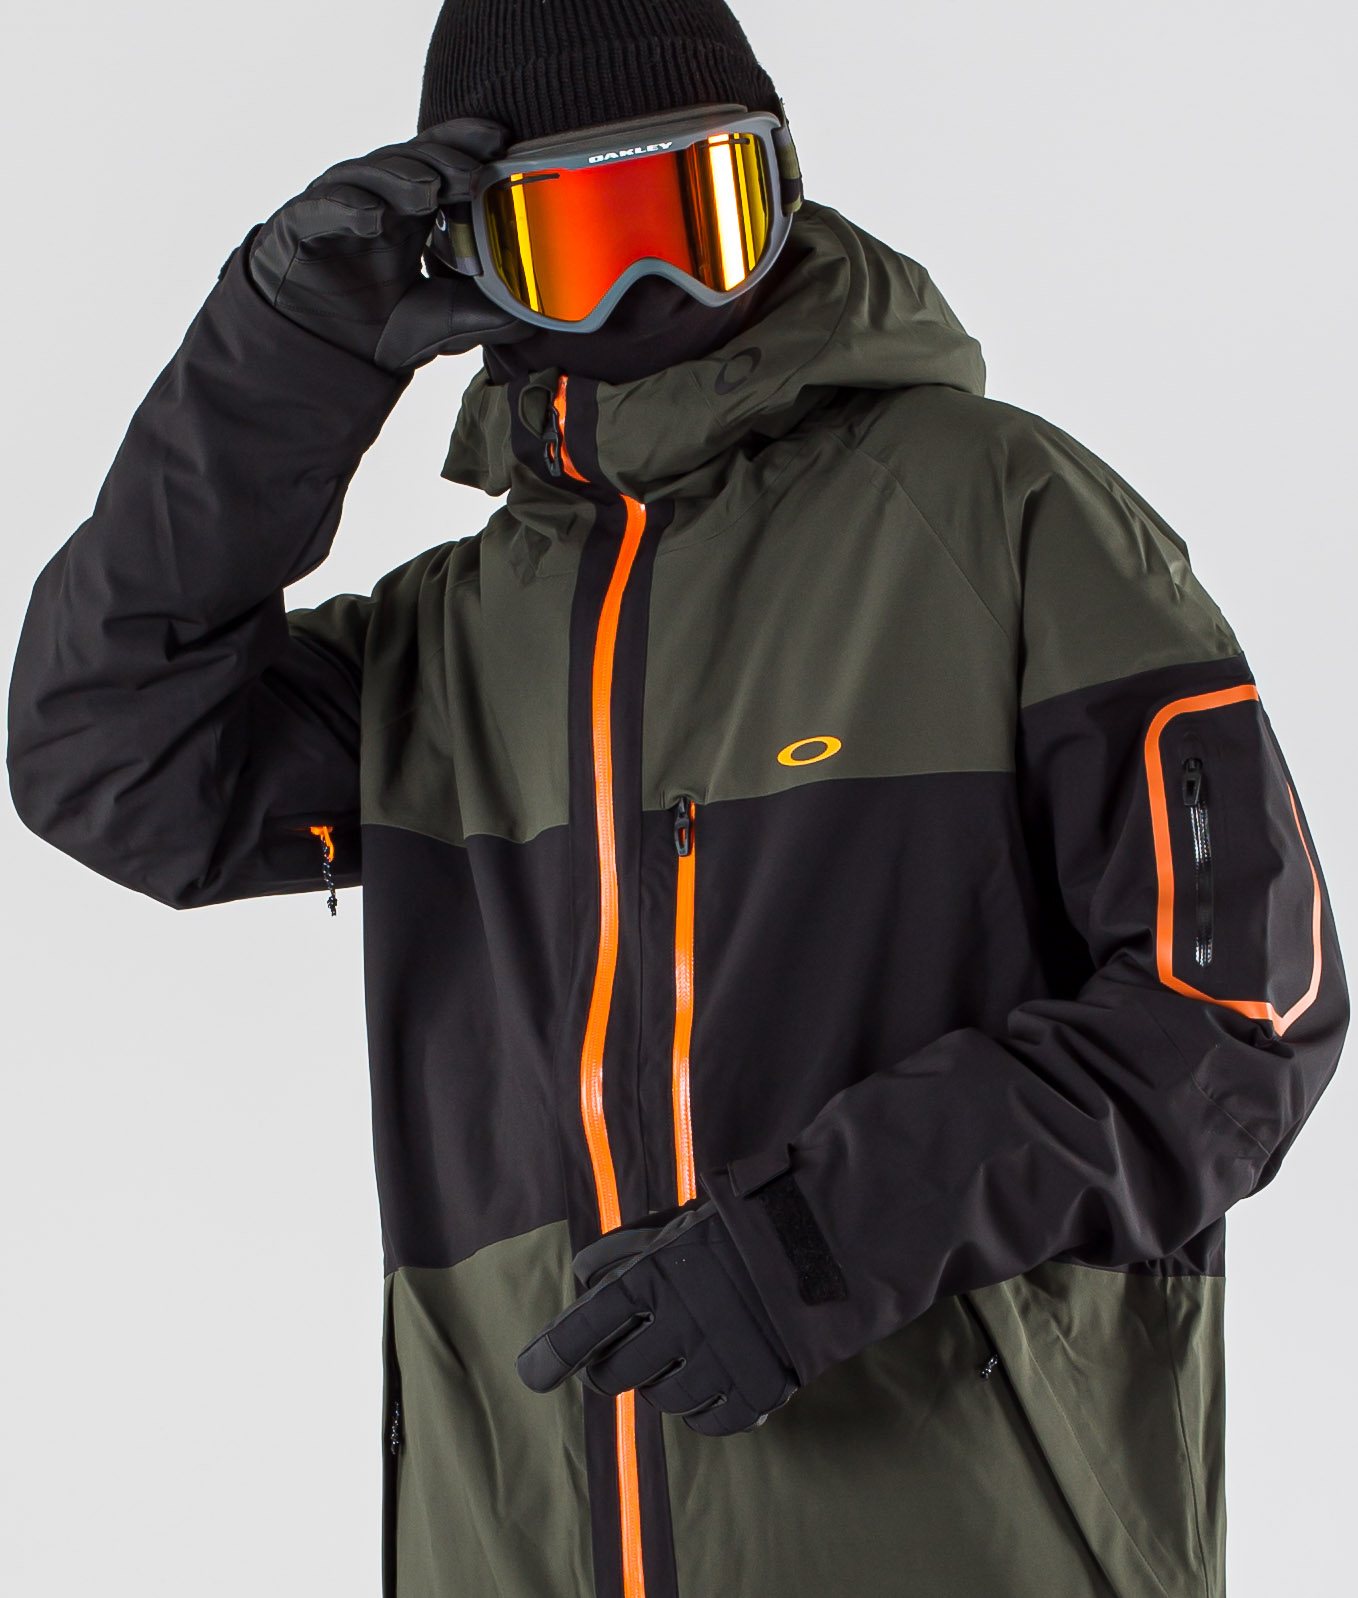 oakley snowboarding jackets